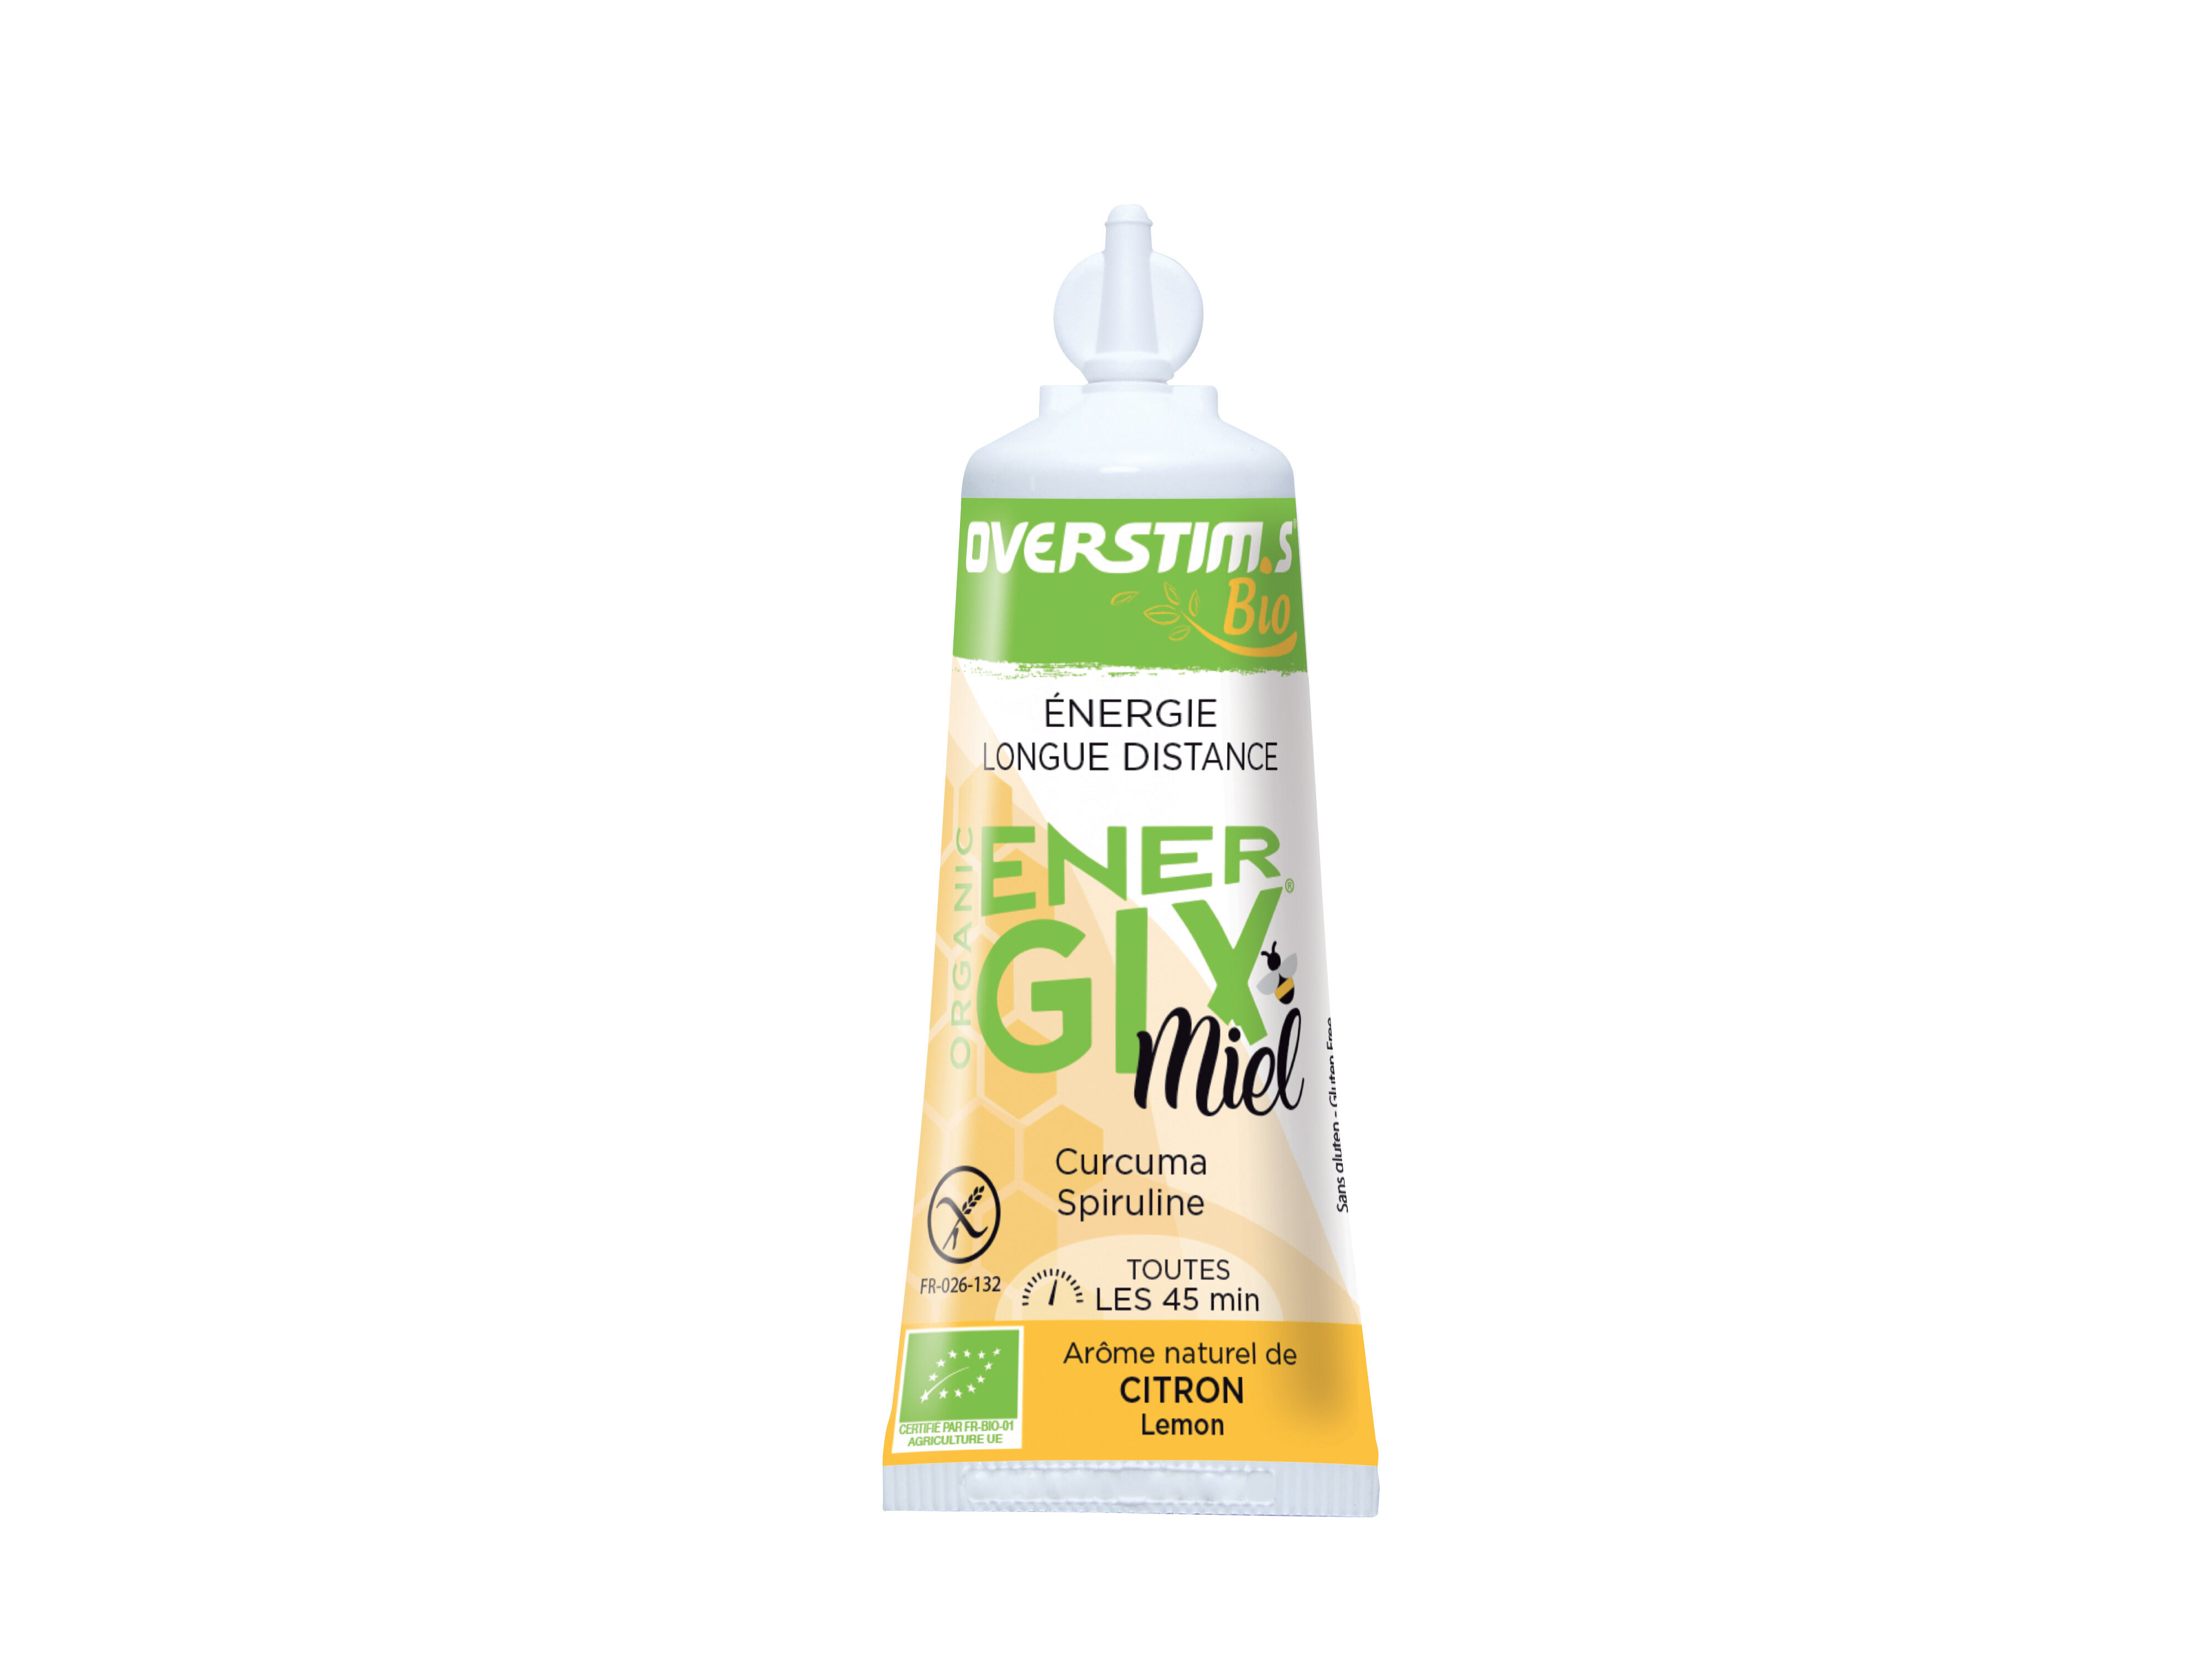 Overstim.s Energix Miel Bio - Energy gels